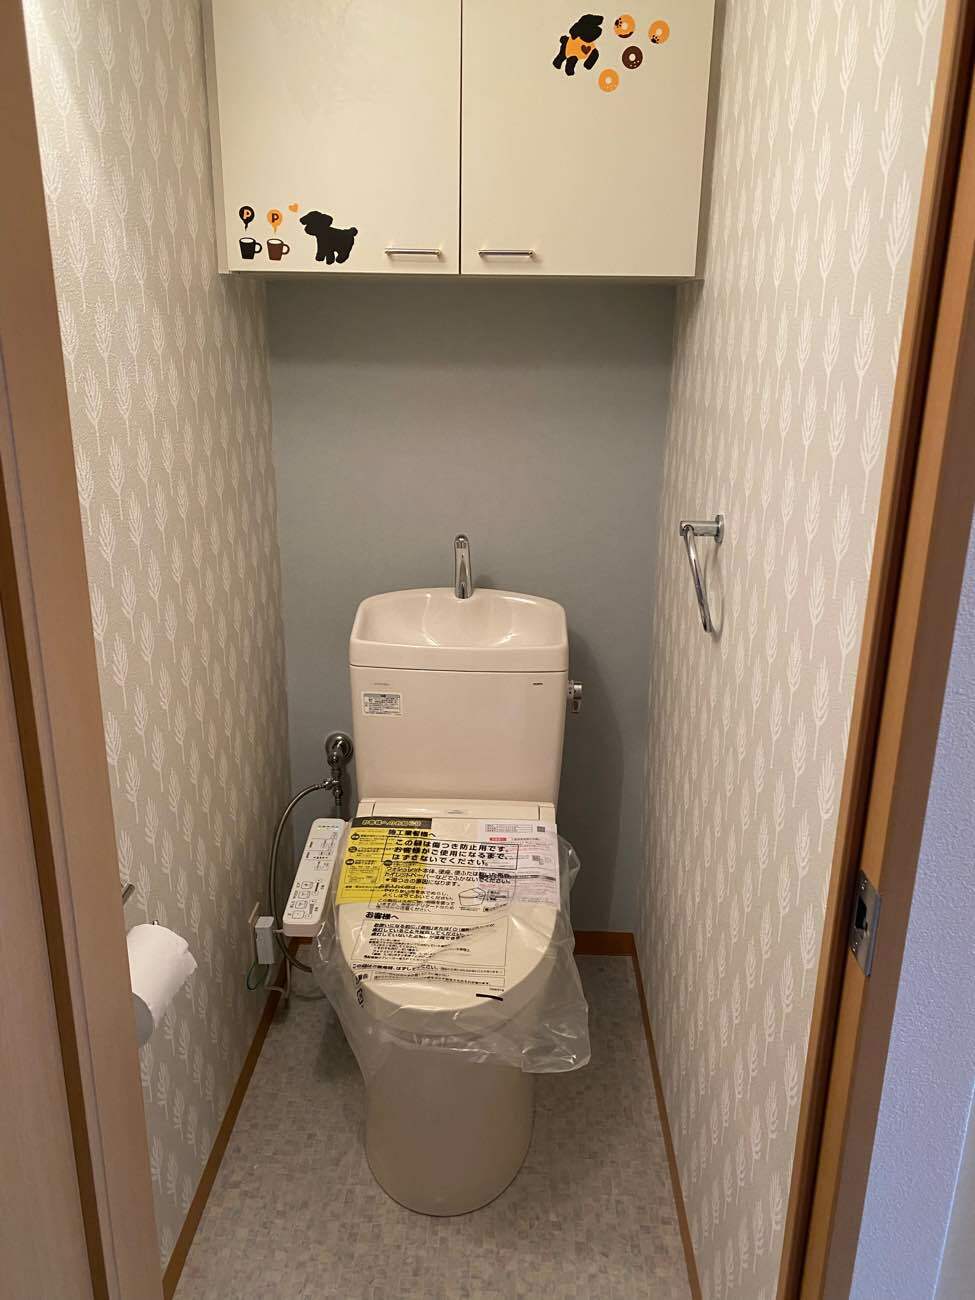 【埼玉県吉川市】M様邸トイレ交換工事が完了しました。TOTO ピュアレスト 画像